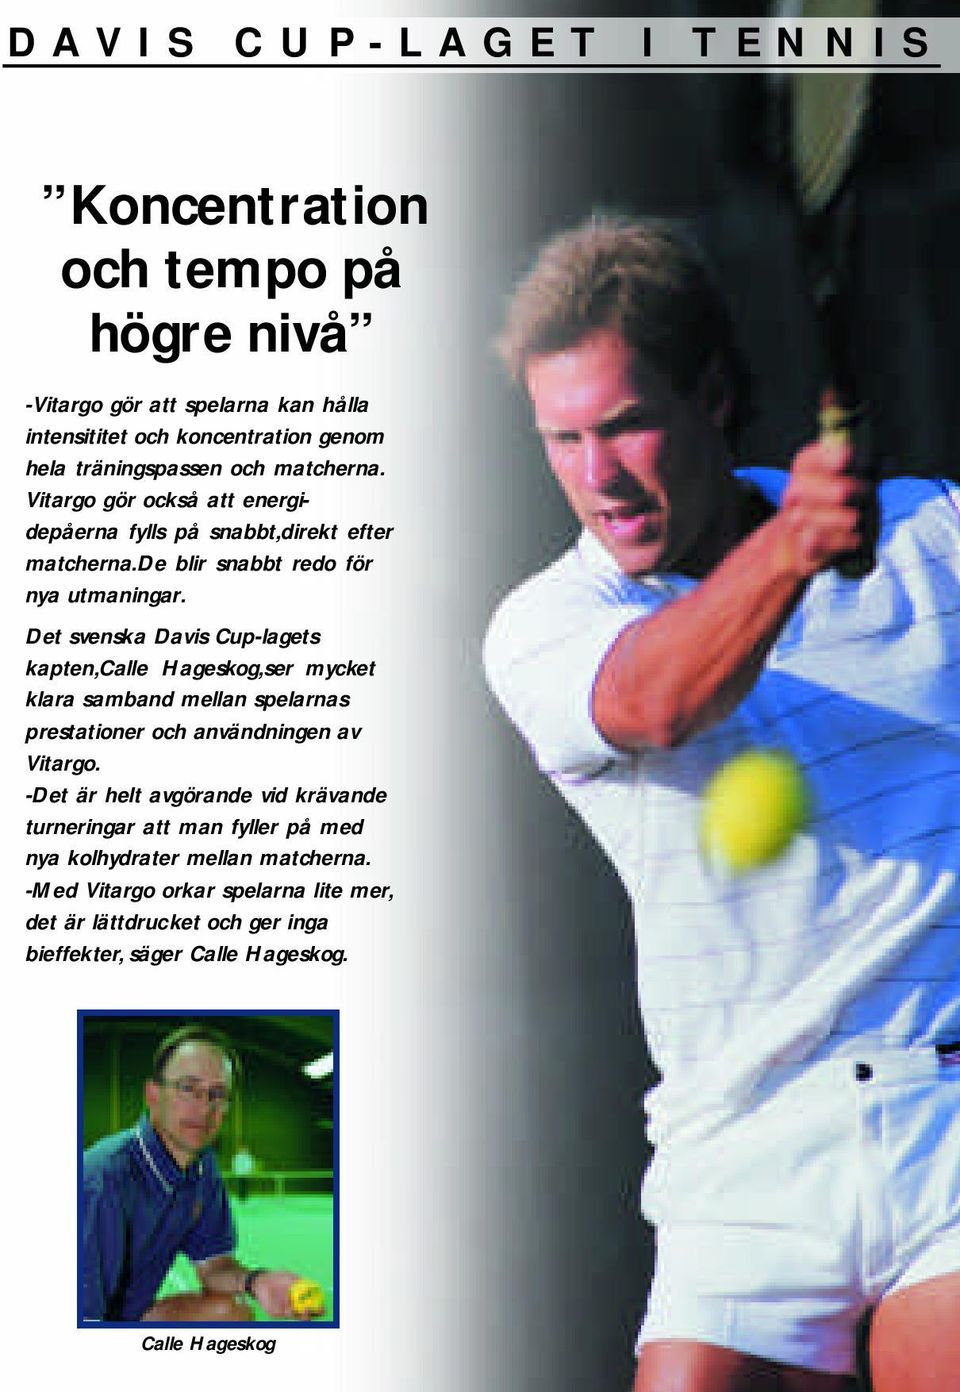 Det svenska Davis Cup-lagets kapten,calle Hageskog,ser mycket klara samband mellan spelarnas prestationer och användningen av Vitargo.